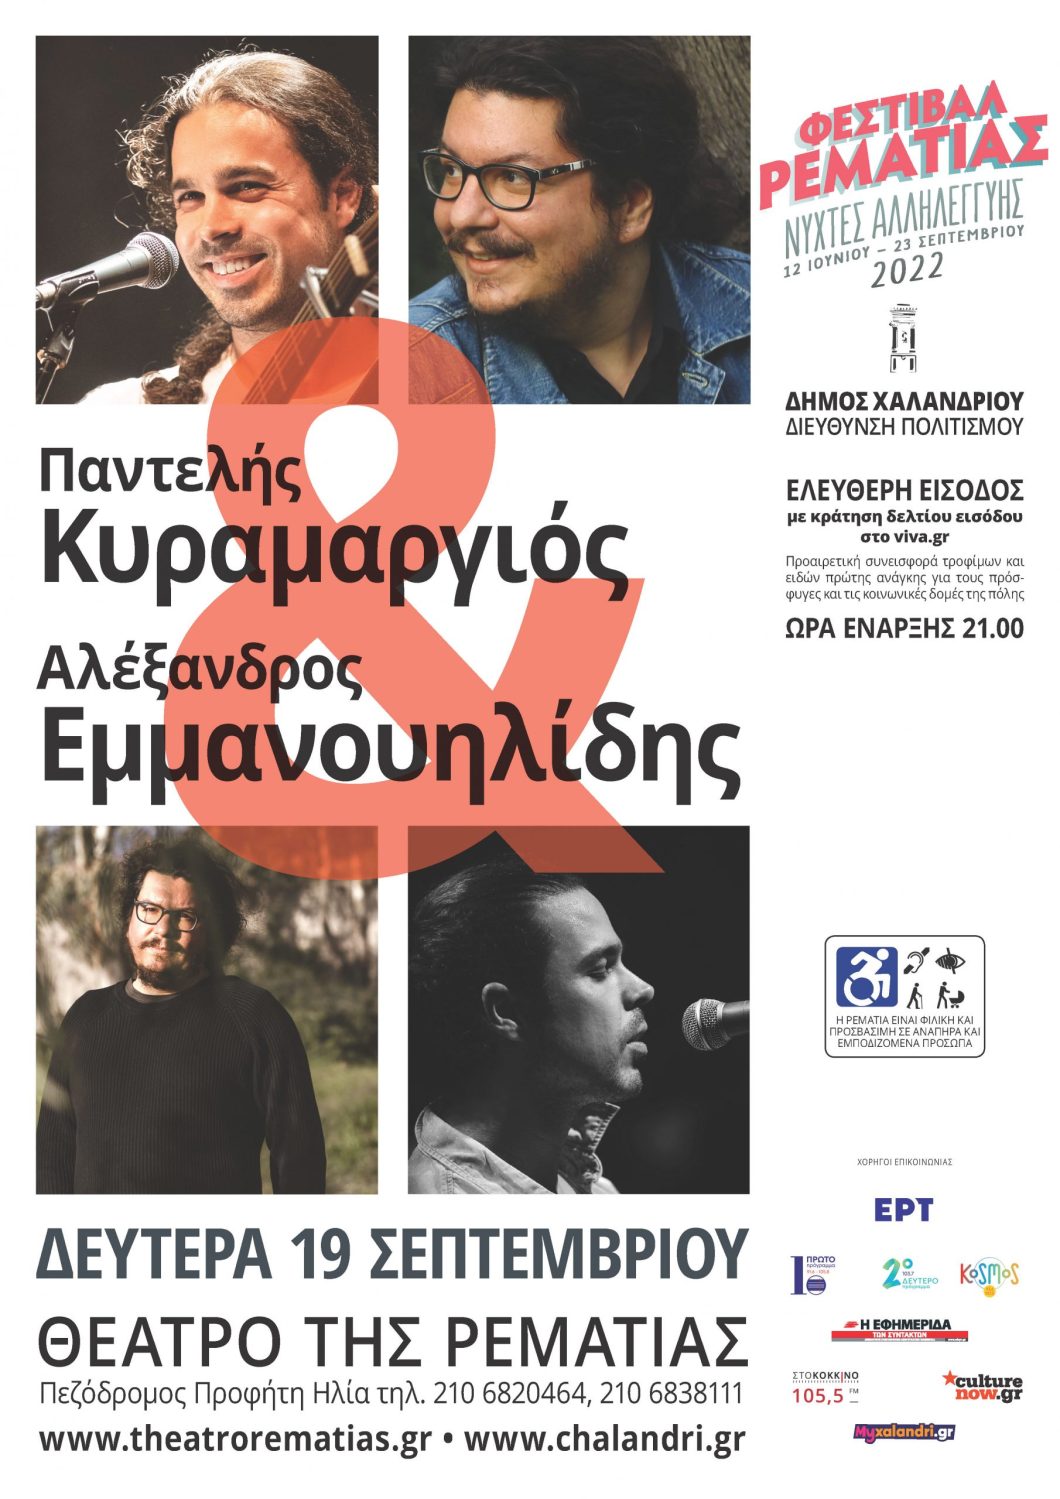 Φεστιβάλ Ρεματιάς – Νύχτες Αλληλεγγύης: Παντελής Κυραμαργιός & Αλέξανδρος Εμμανουηλίδης – 19 Σεπτεμβρίου